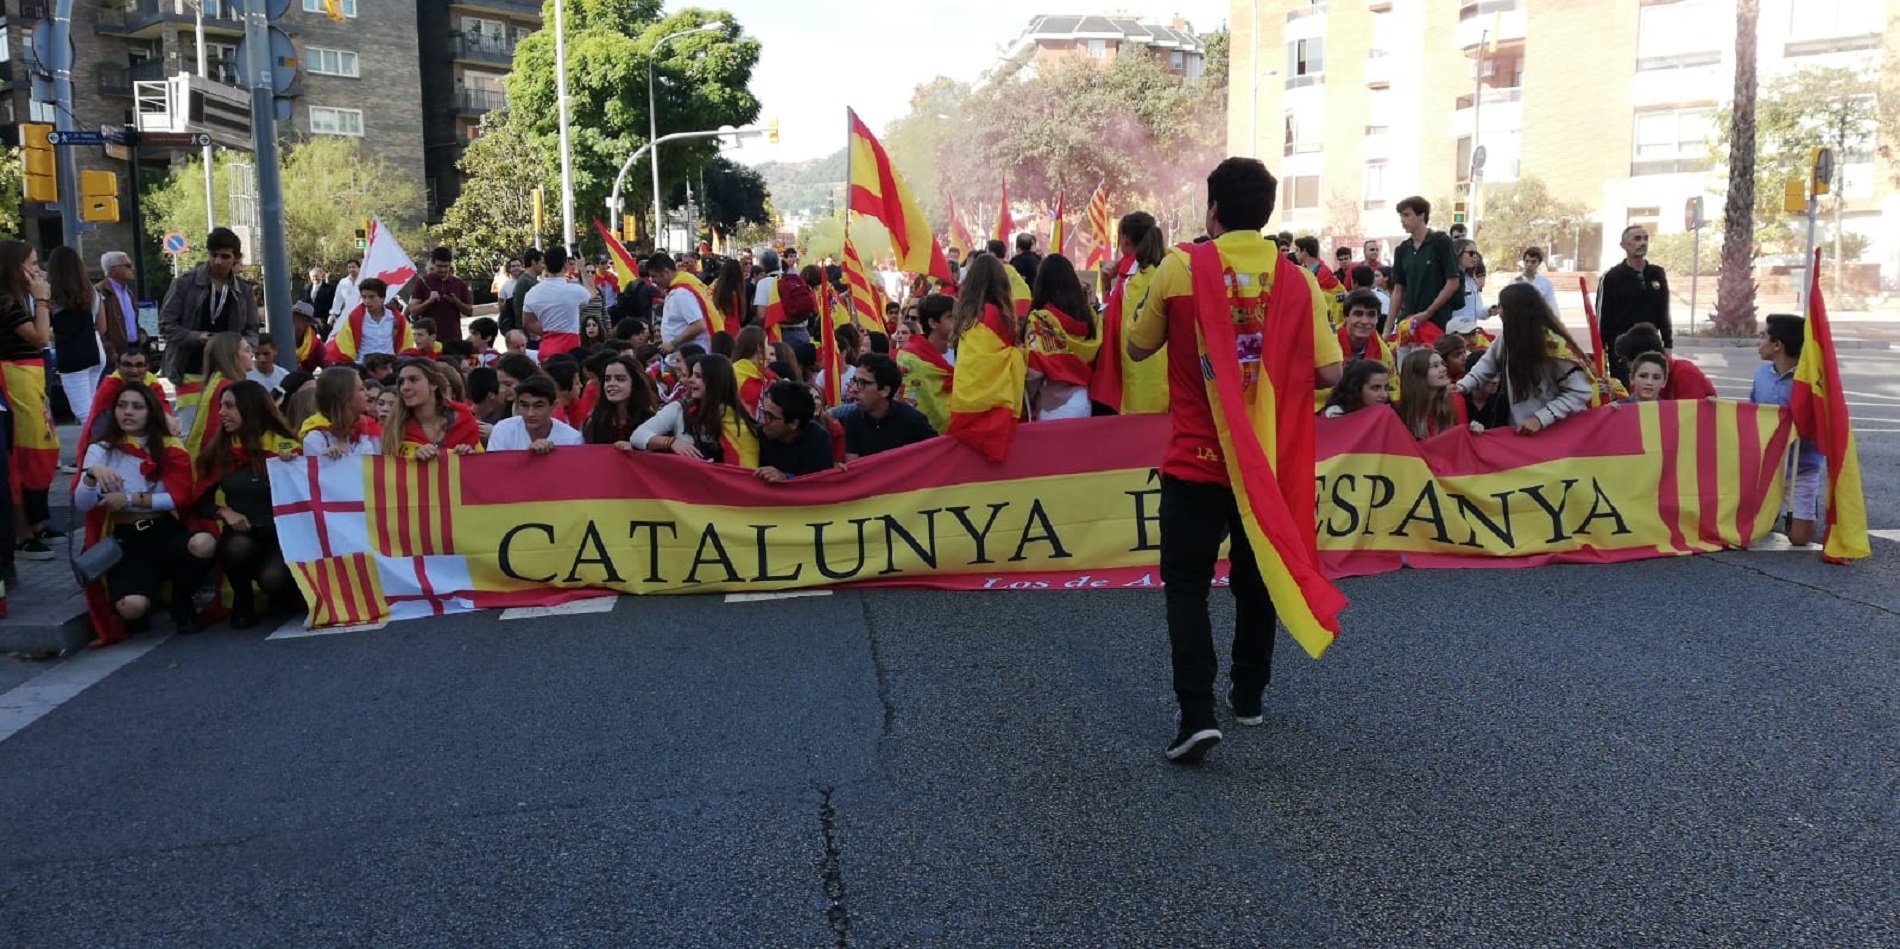 VÍDEO | "Sois españoles y lo sabéis", así increpan a los españolistas a los independentistas